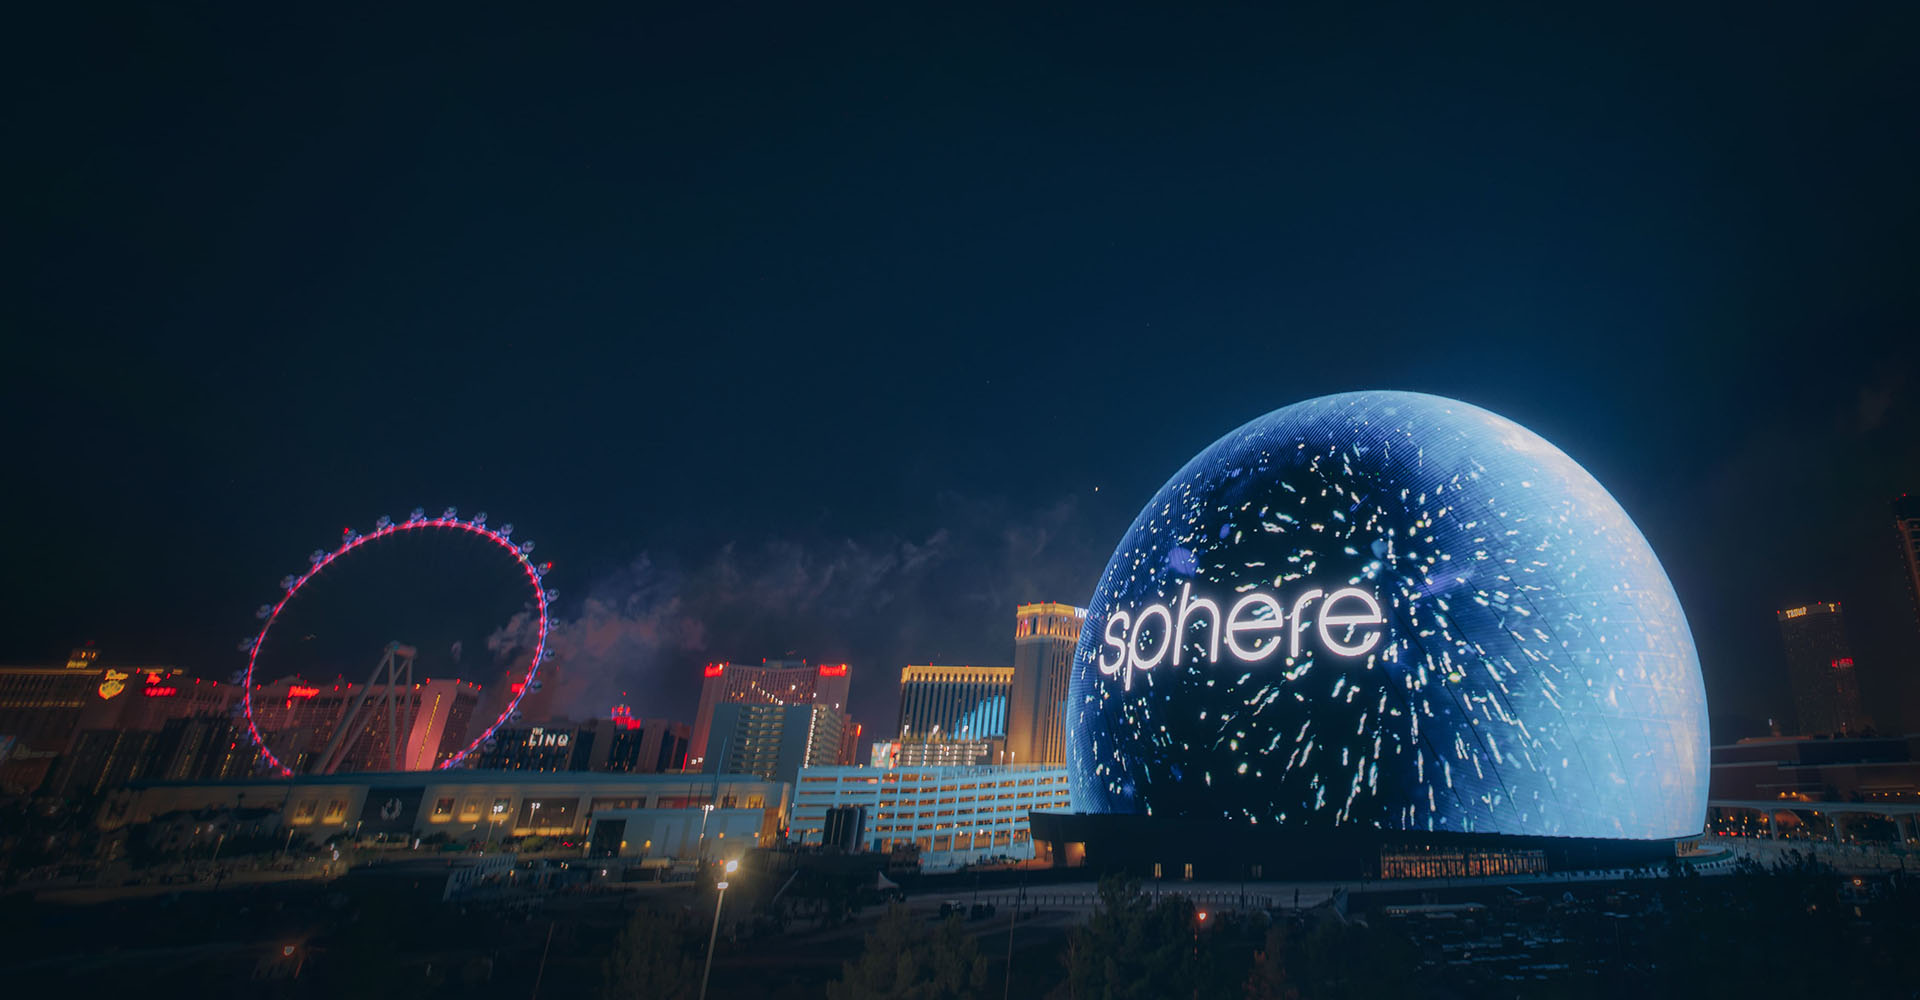 Концертная площадка Sphere - в Лас-Вегасе появилось самое большое в мире сферическое здание